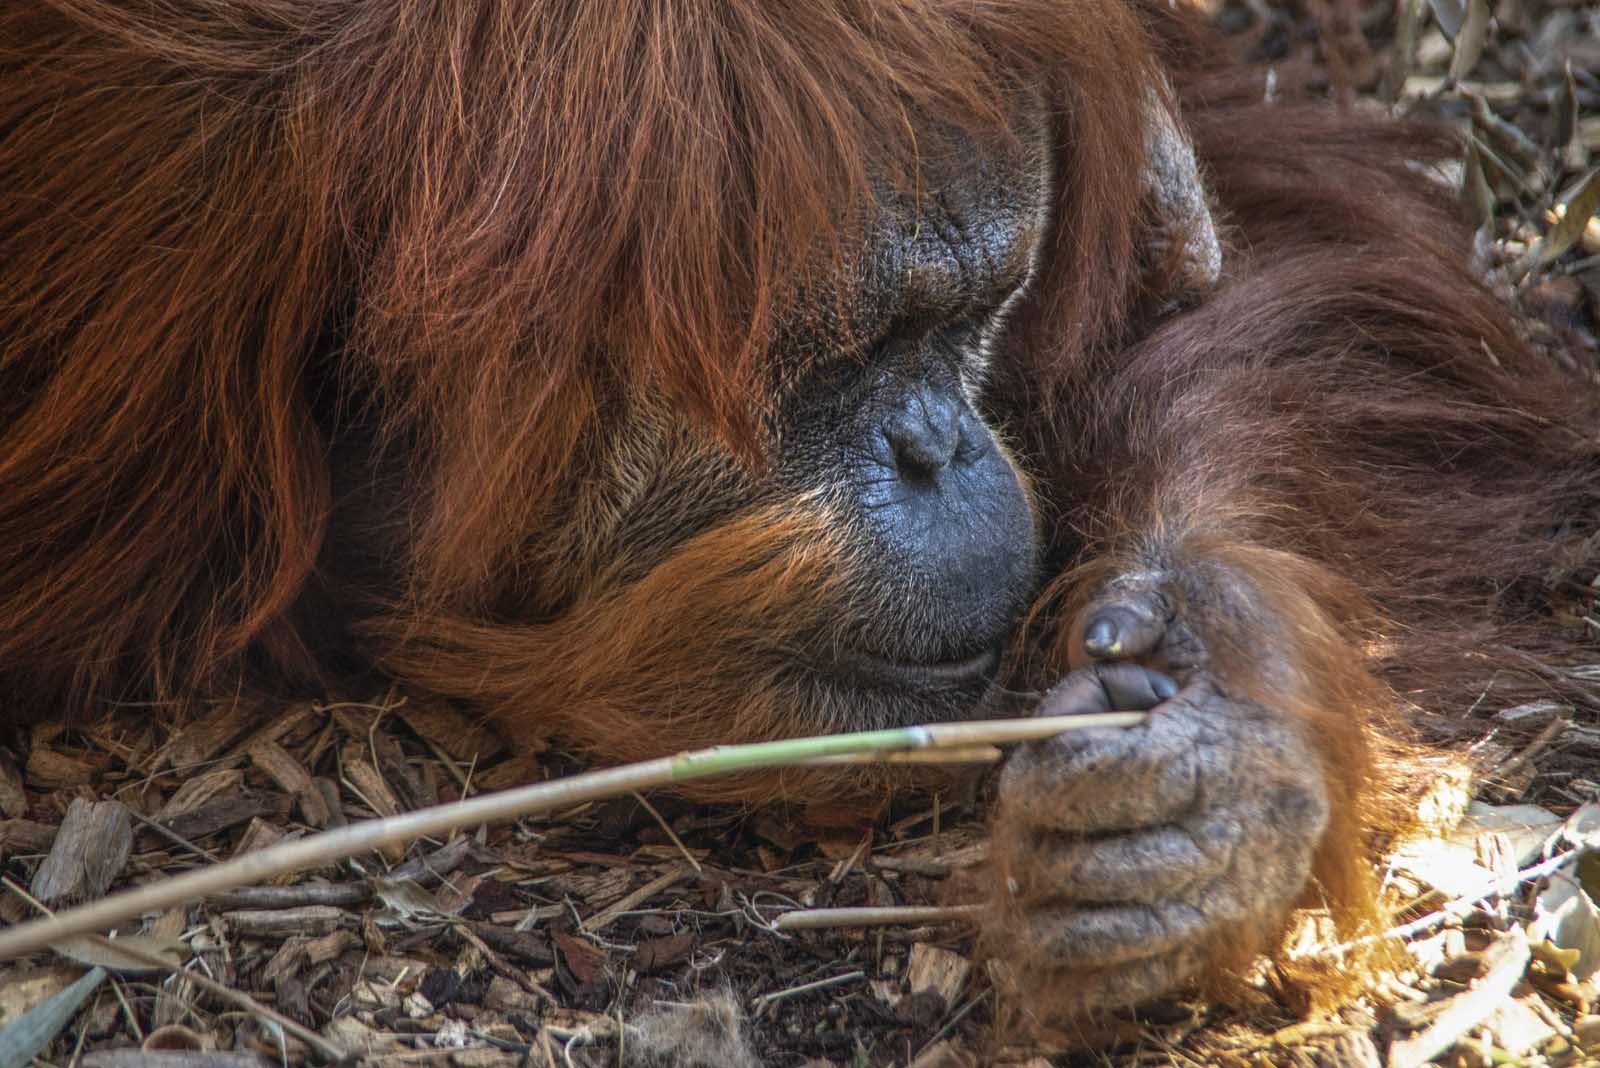 Il maschio adulto di Orango, grosso e possente, può superare i 100 kg di peso. La femmina molto più piccola, pesa fra i 30 e i 45 kg. Le braccia, lunghe e robuste, hanno un’apertura che può superare i 2 m.